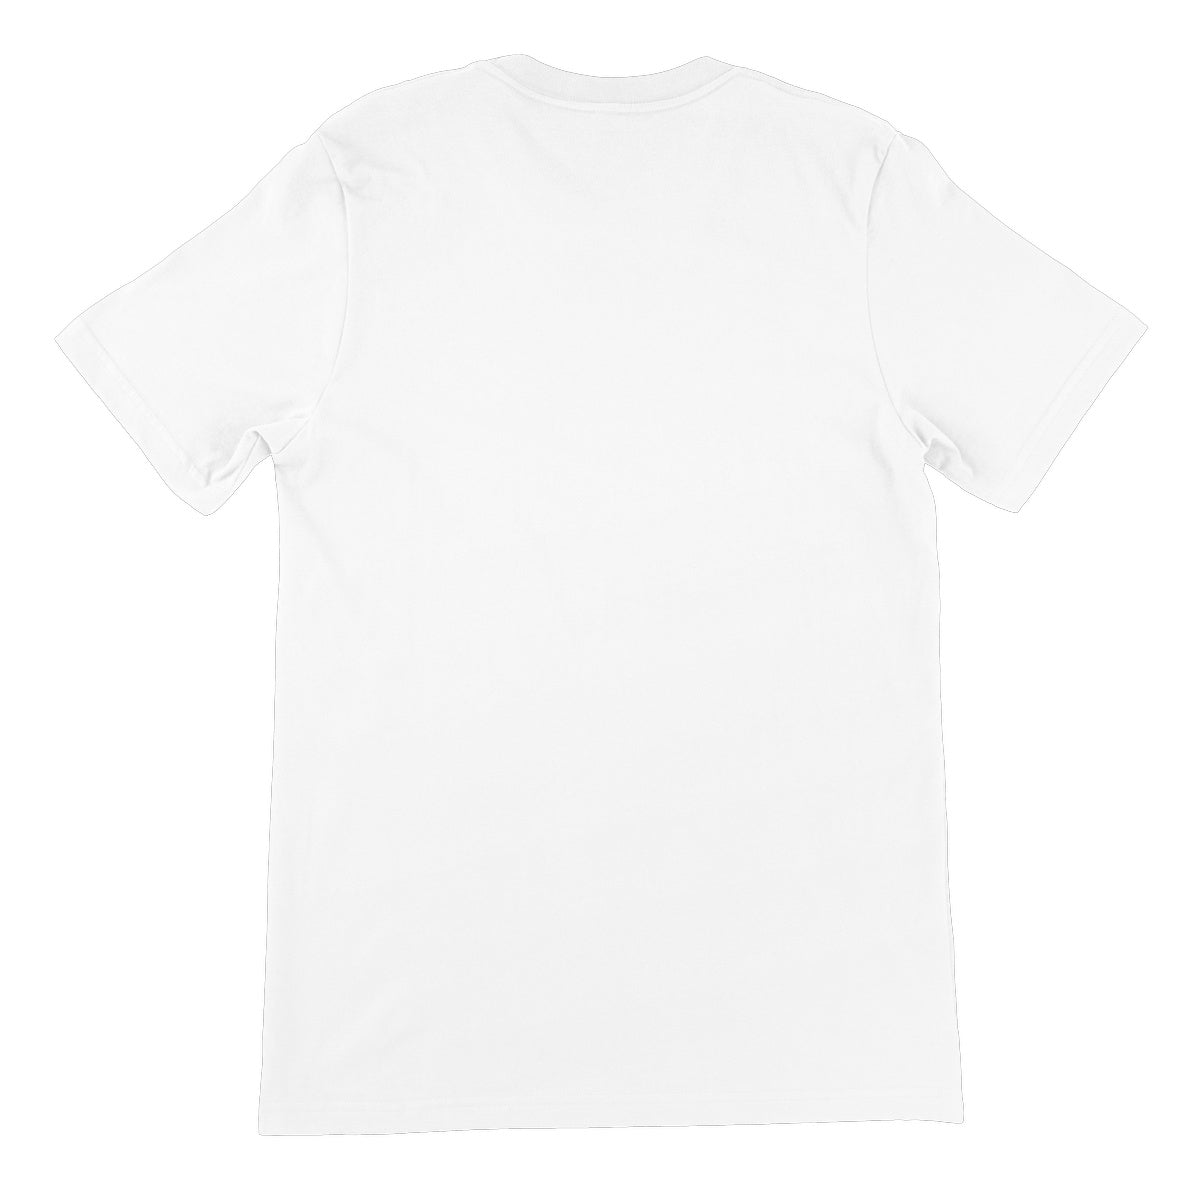 AQUA B&W - 02 - Jellyfish - Unisex Fine Jersey T-Shirt